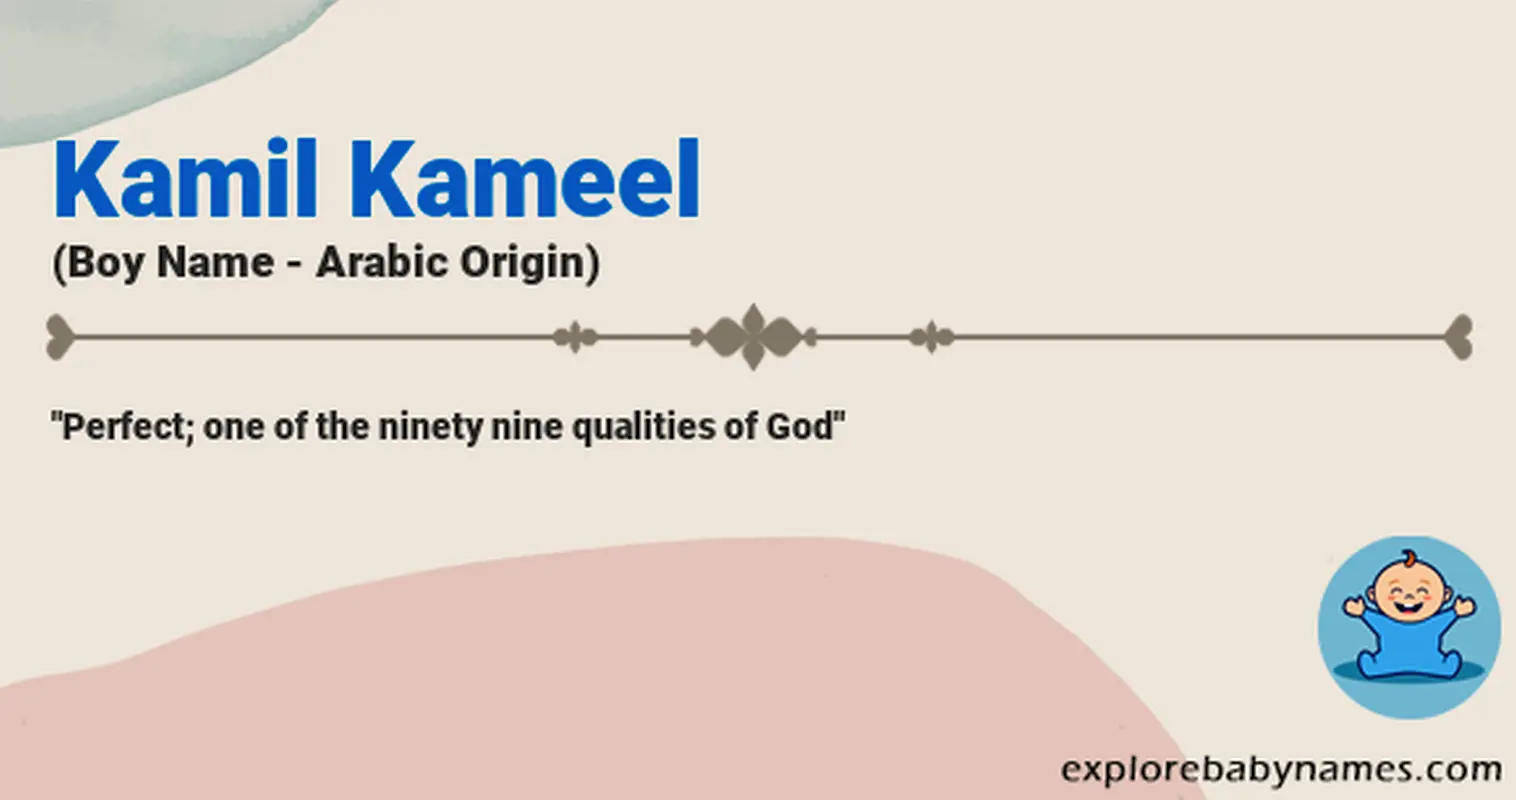 Meaning of Kamil Kameel